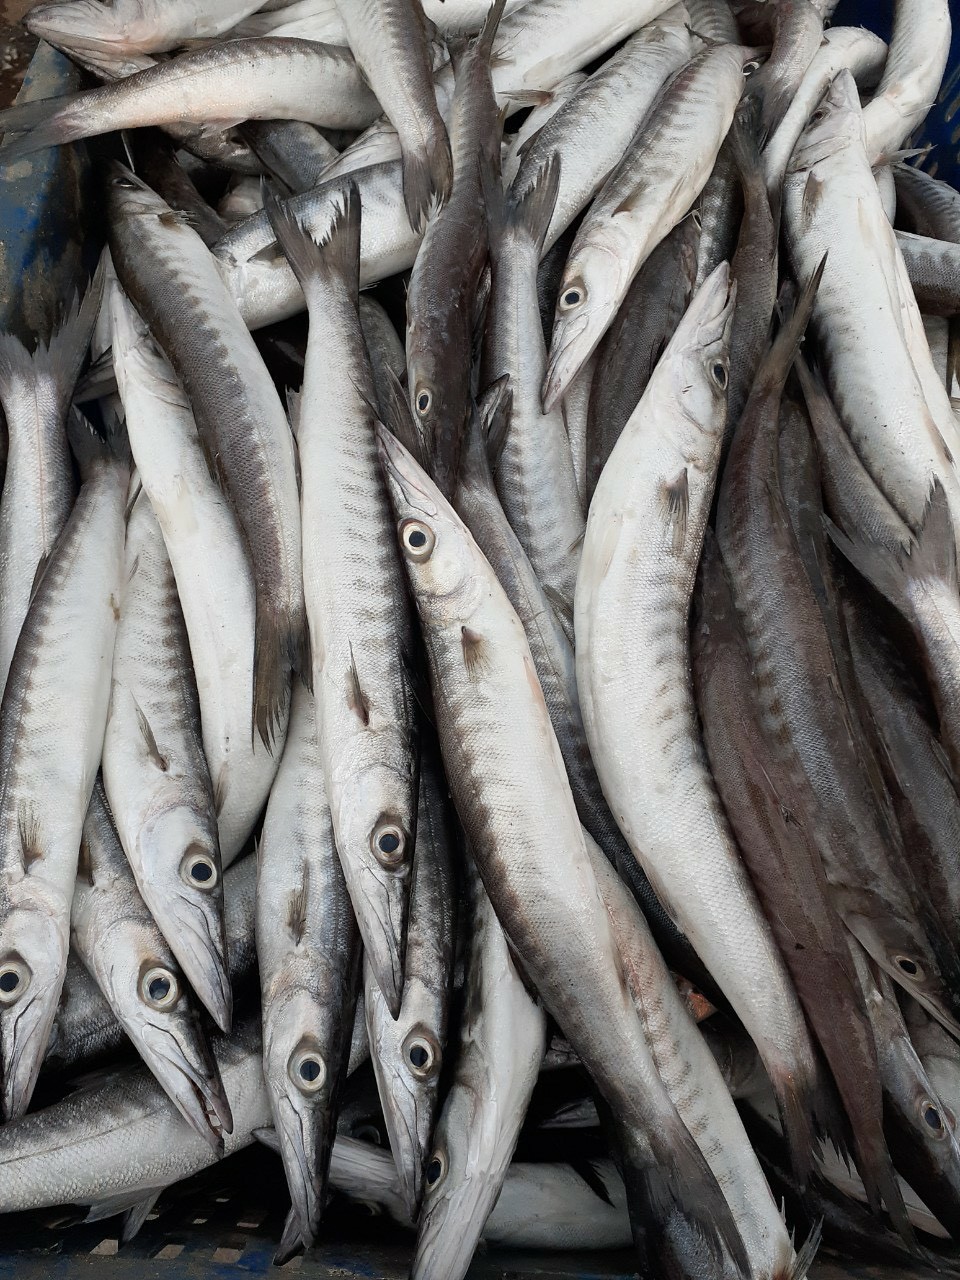 Ở Phú Quốc có đặc sản cá miệng nhọn hoắt, mình dài như mũi tên nhưng ngon và bổ, không nơi nào sánh bằng - Ảnh 7.